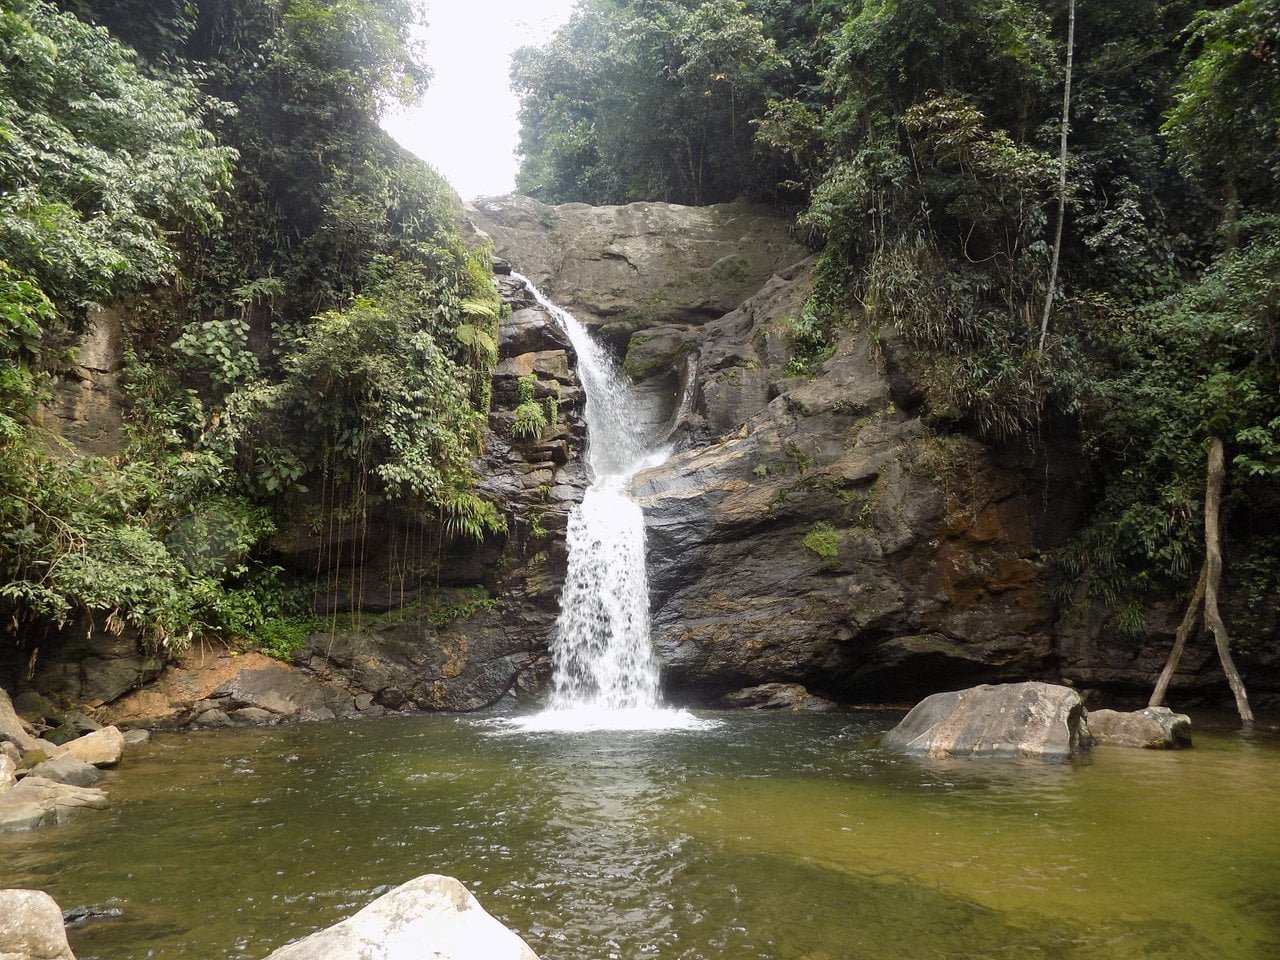 cachoeira da terceira - cachoeiras de macacu (rj)